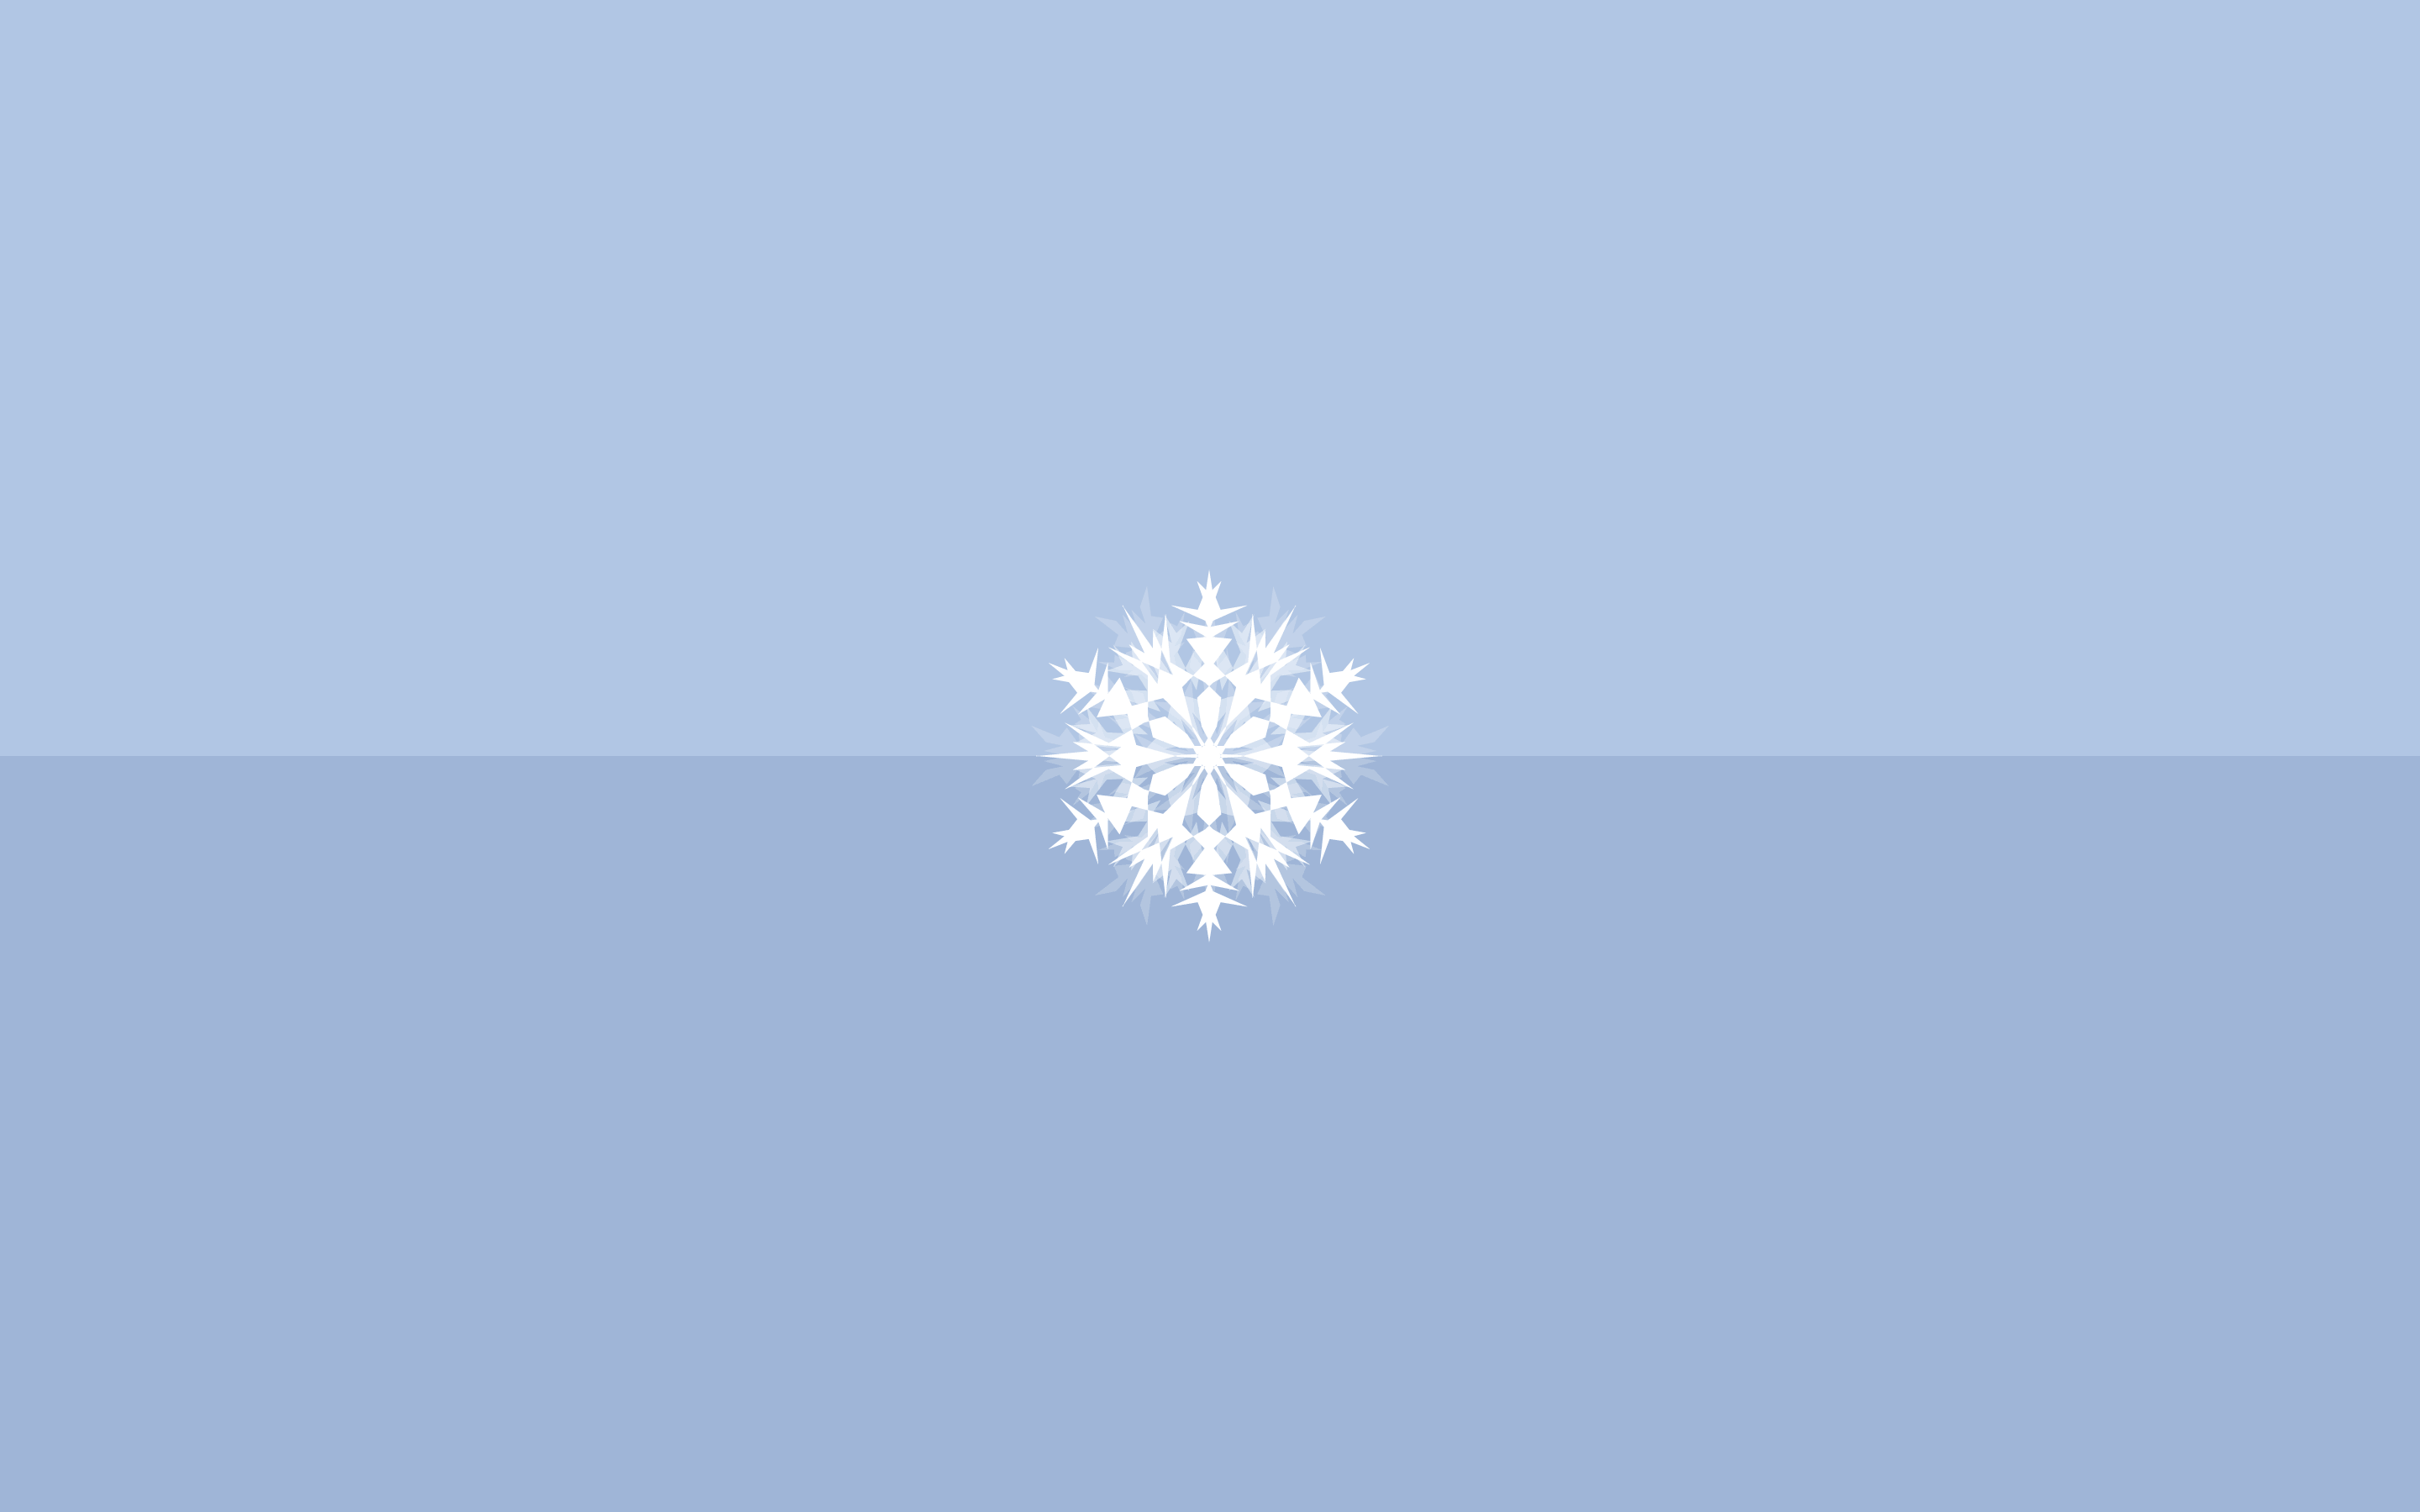 winter theme + snowflake. Winter wallpaper desktop